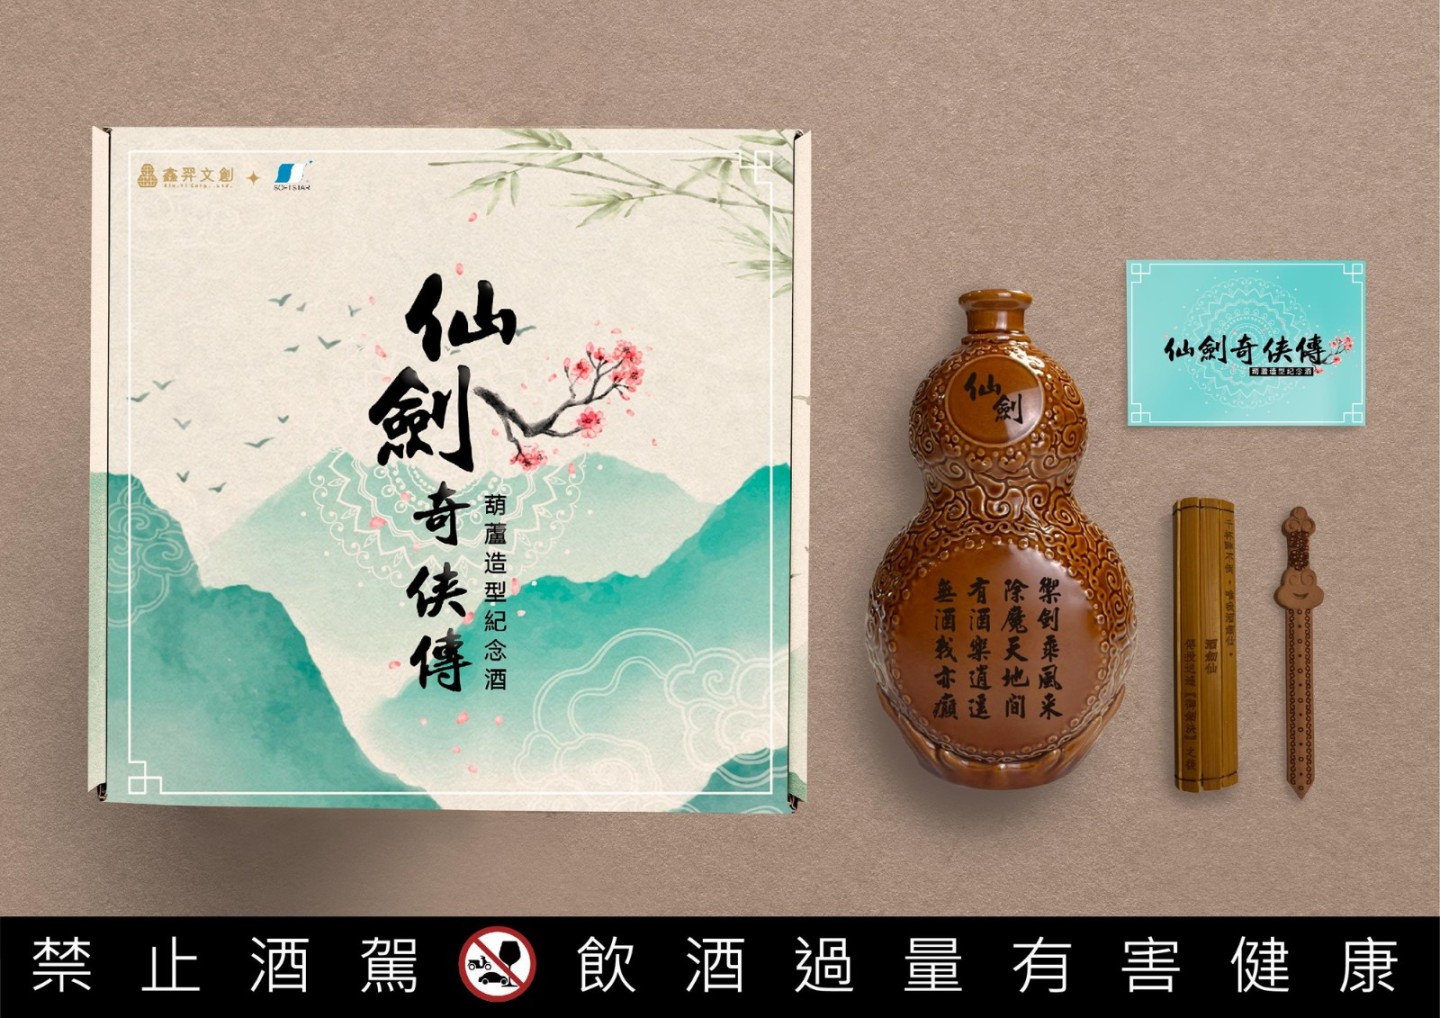 《仙劍奇俠傳》推限量版"葫蘆"造型紀念酒  8月31日開始預購-第1張